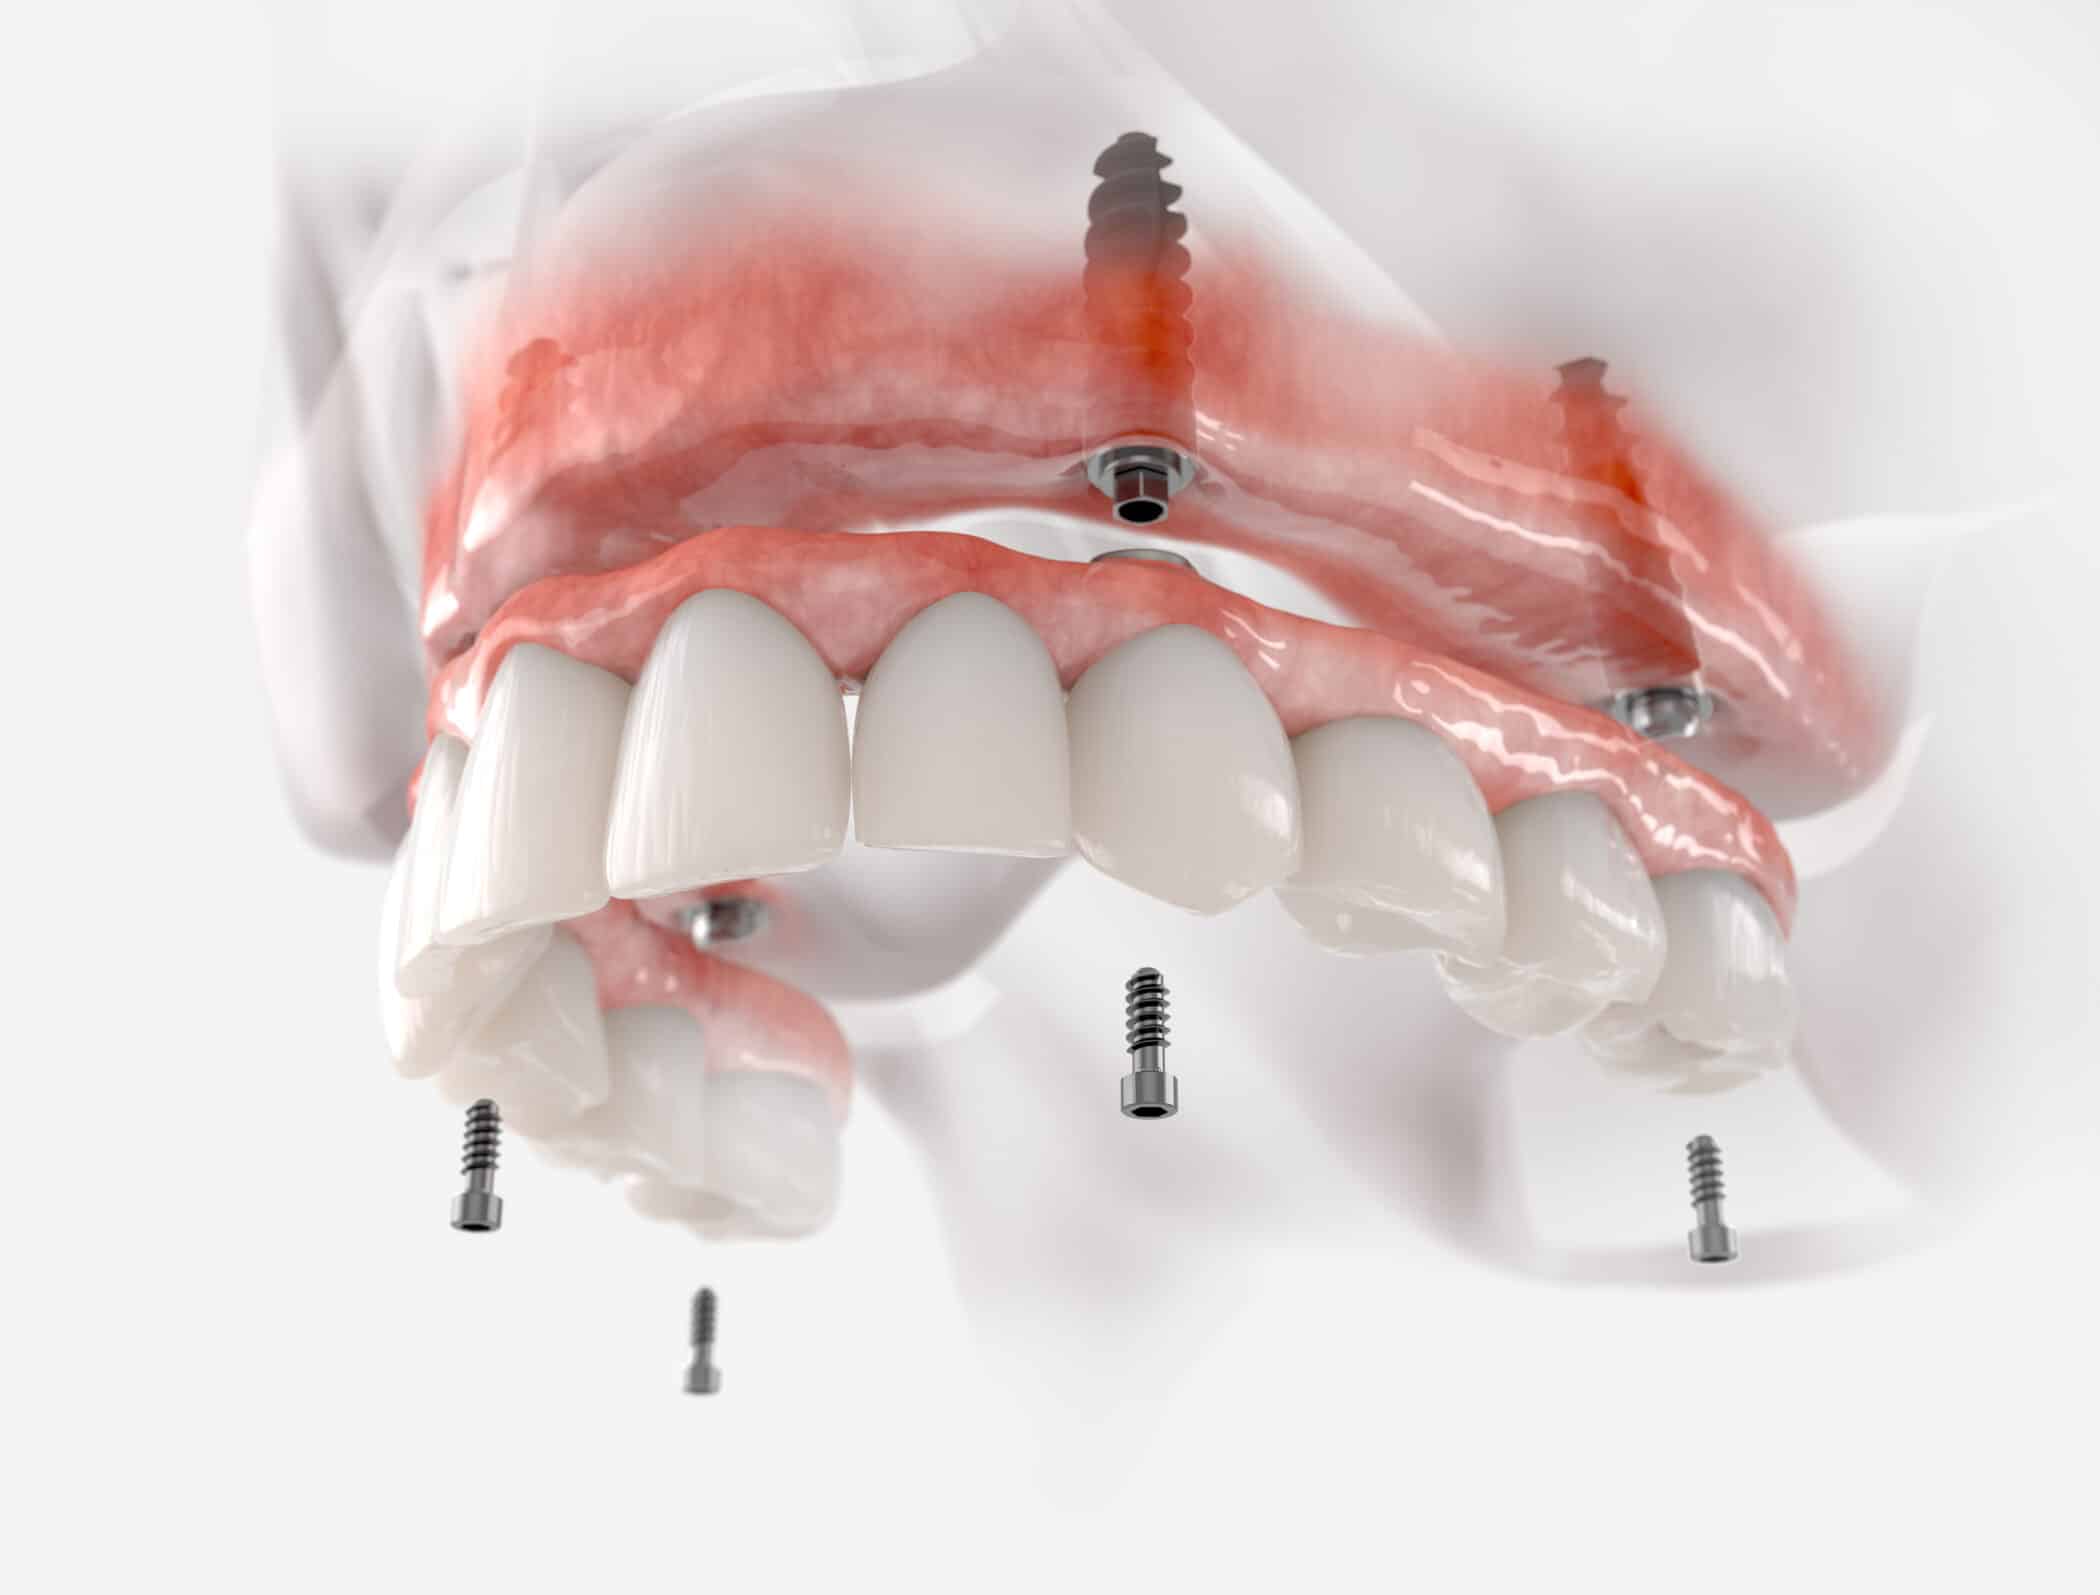 Maxillary prosthesis